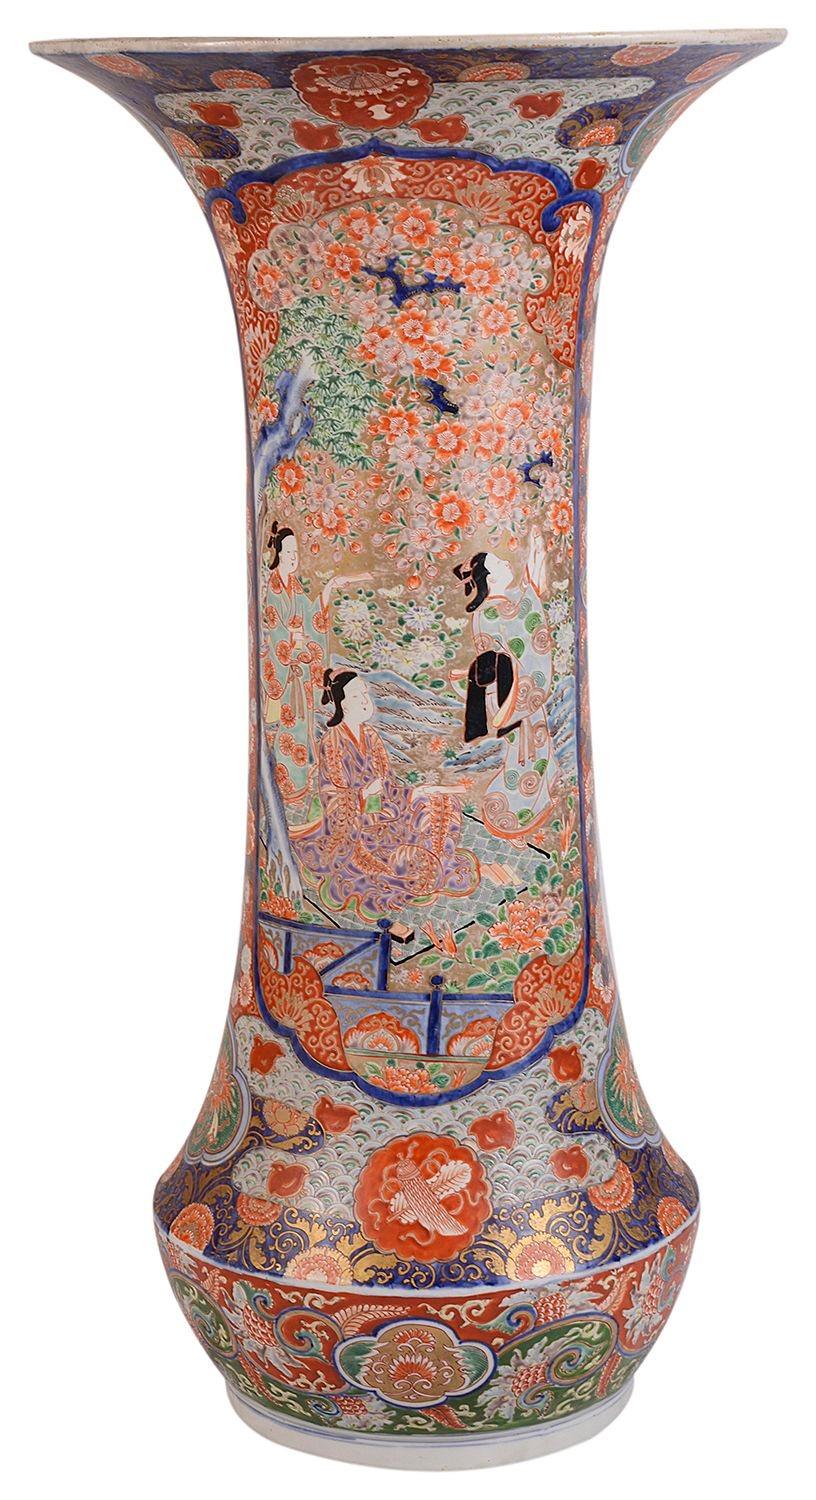 Eine sehr beeindruckende, hochwertige japanische Imari-Vase aus dem späten 19. Jahrhundert mit kräftigen Farben auf den motivgemusterten Rändern, in die bemalte Tafeln mit Geisha-Vögeln zwischen Blütenbäumen eingelassen sind.
 
 
Charge 72 